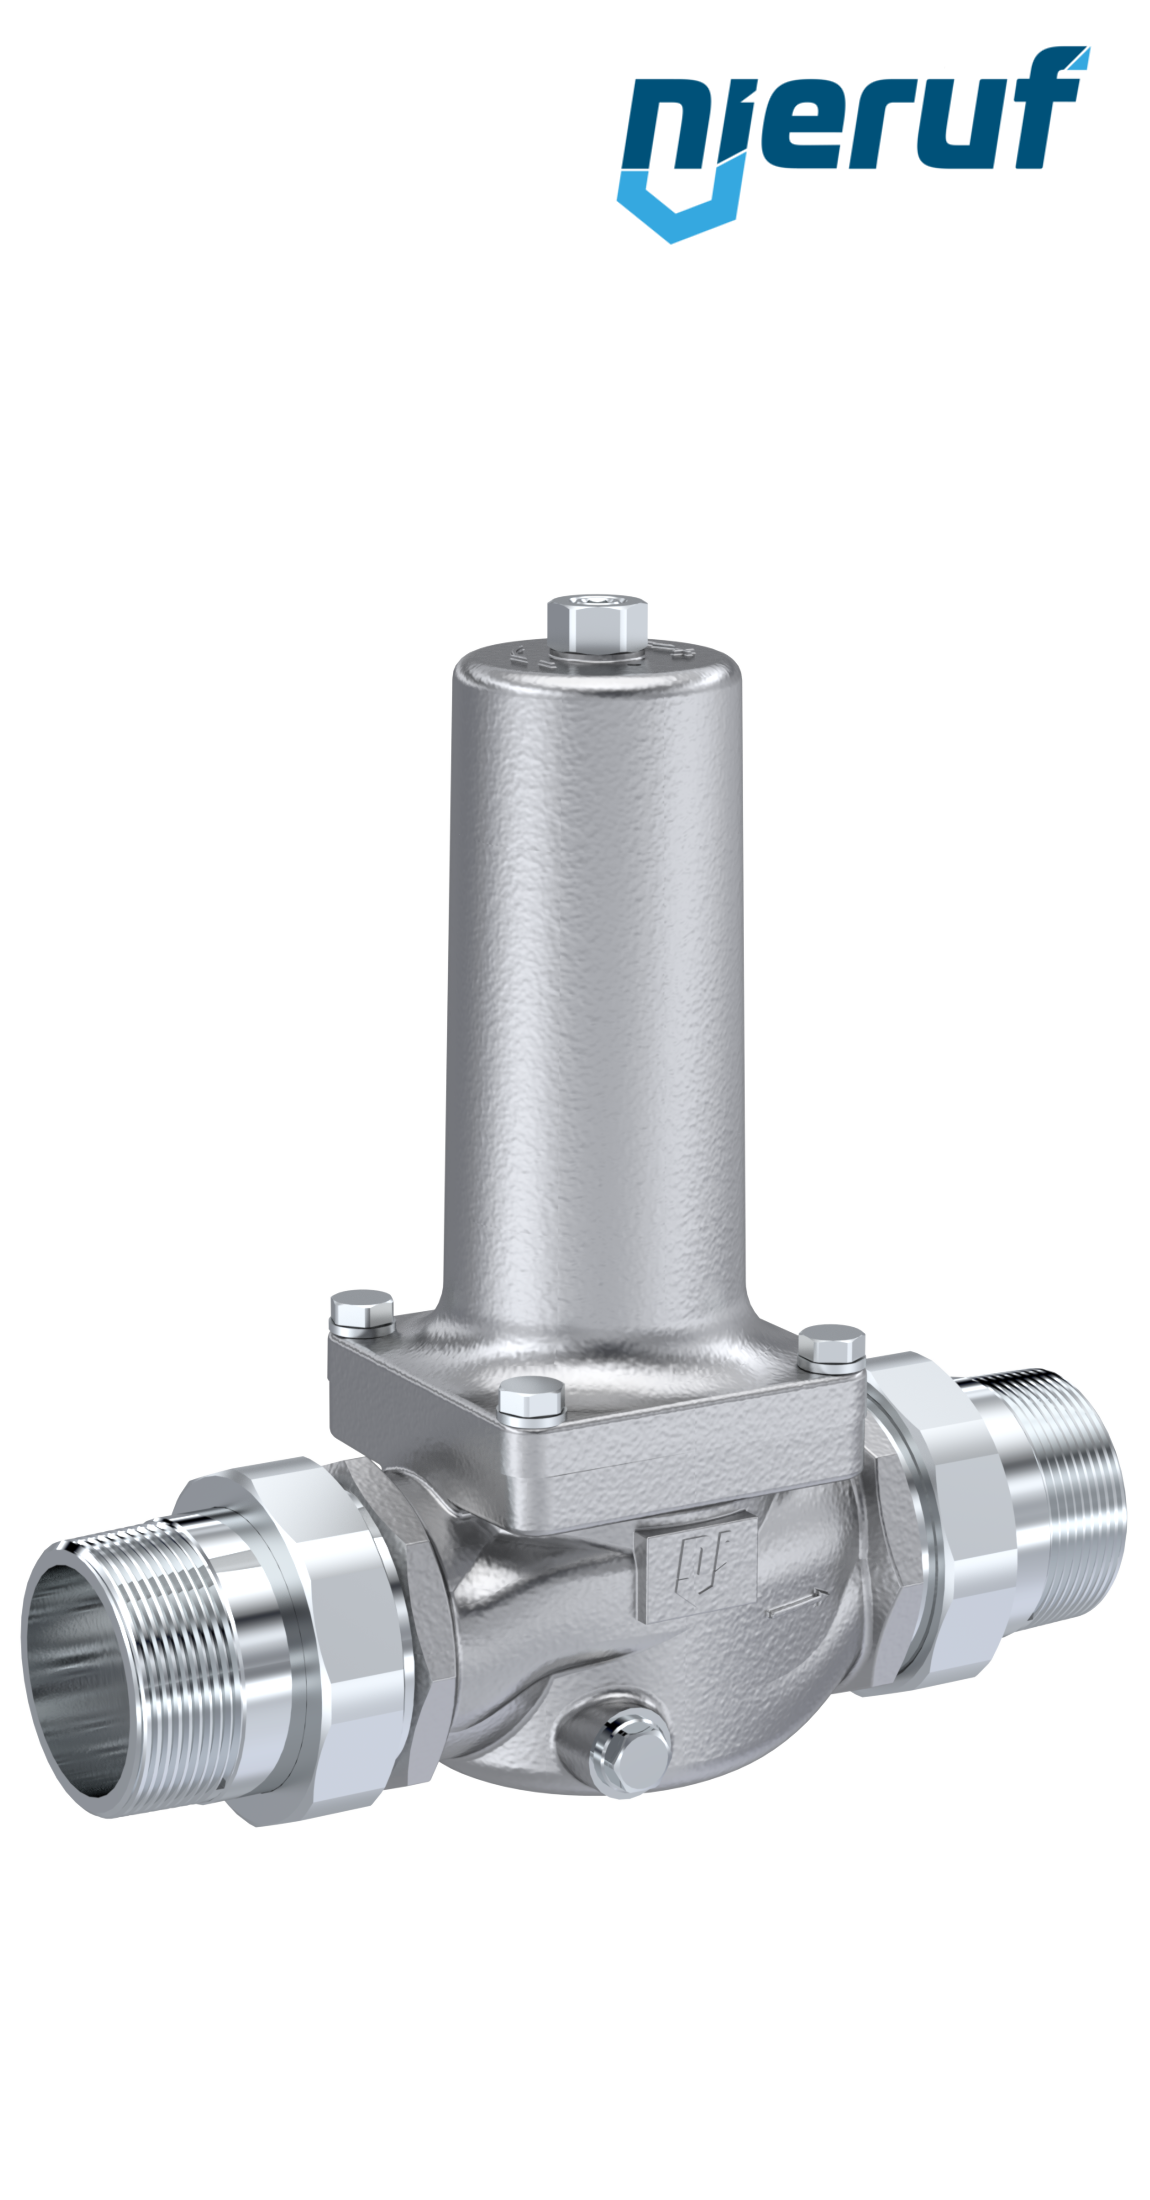 réducteur de pression d'eau (40 bar) G 1/4, 0,5 à 6 bar (DRW1140-6) -  Landefeld - pneumatique - hydraulique - équipements industriels